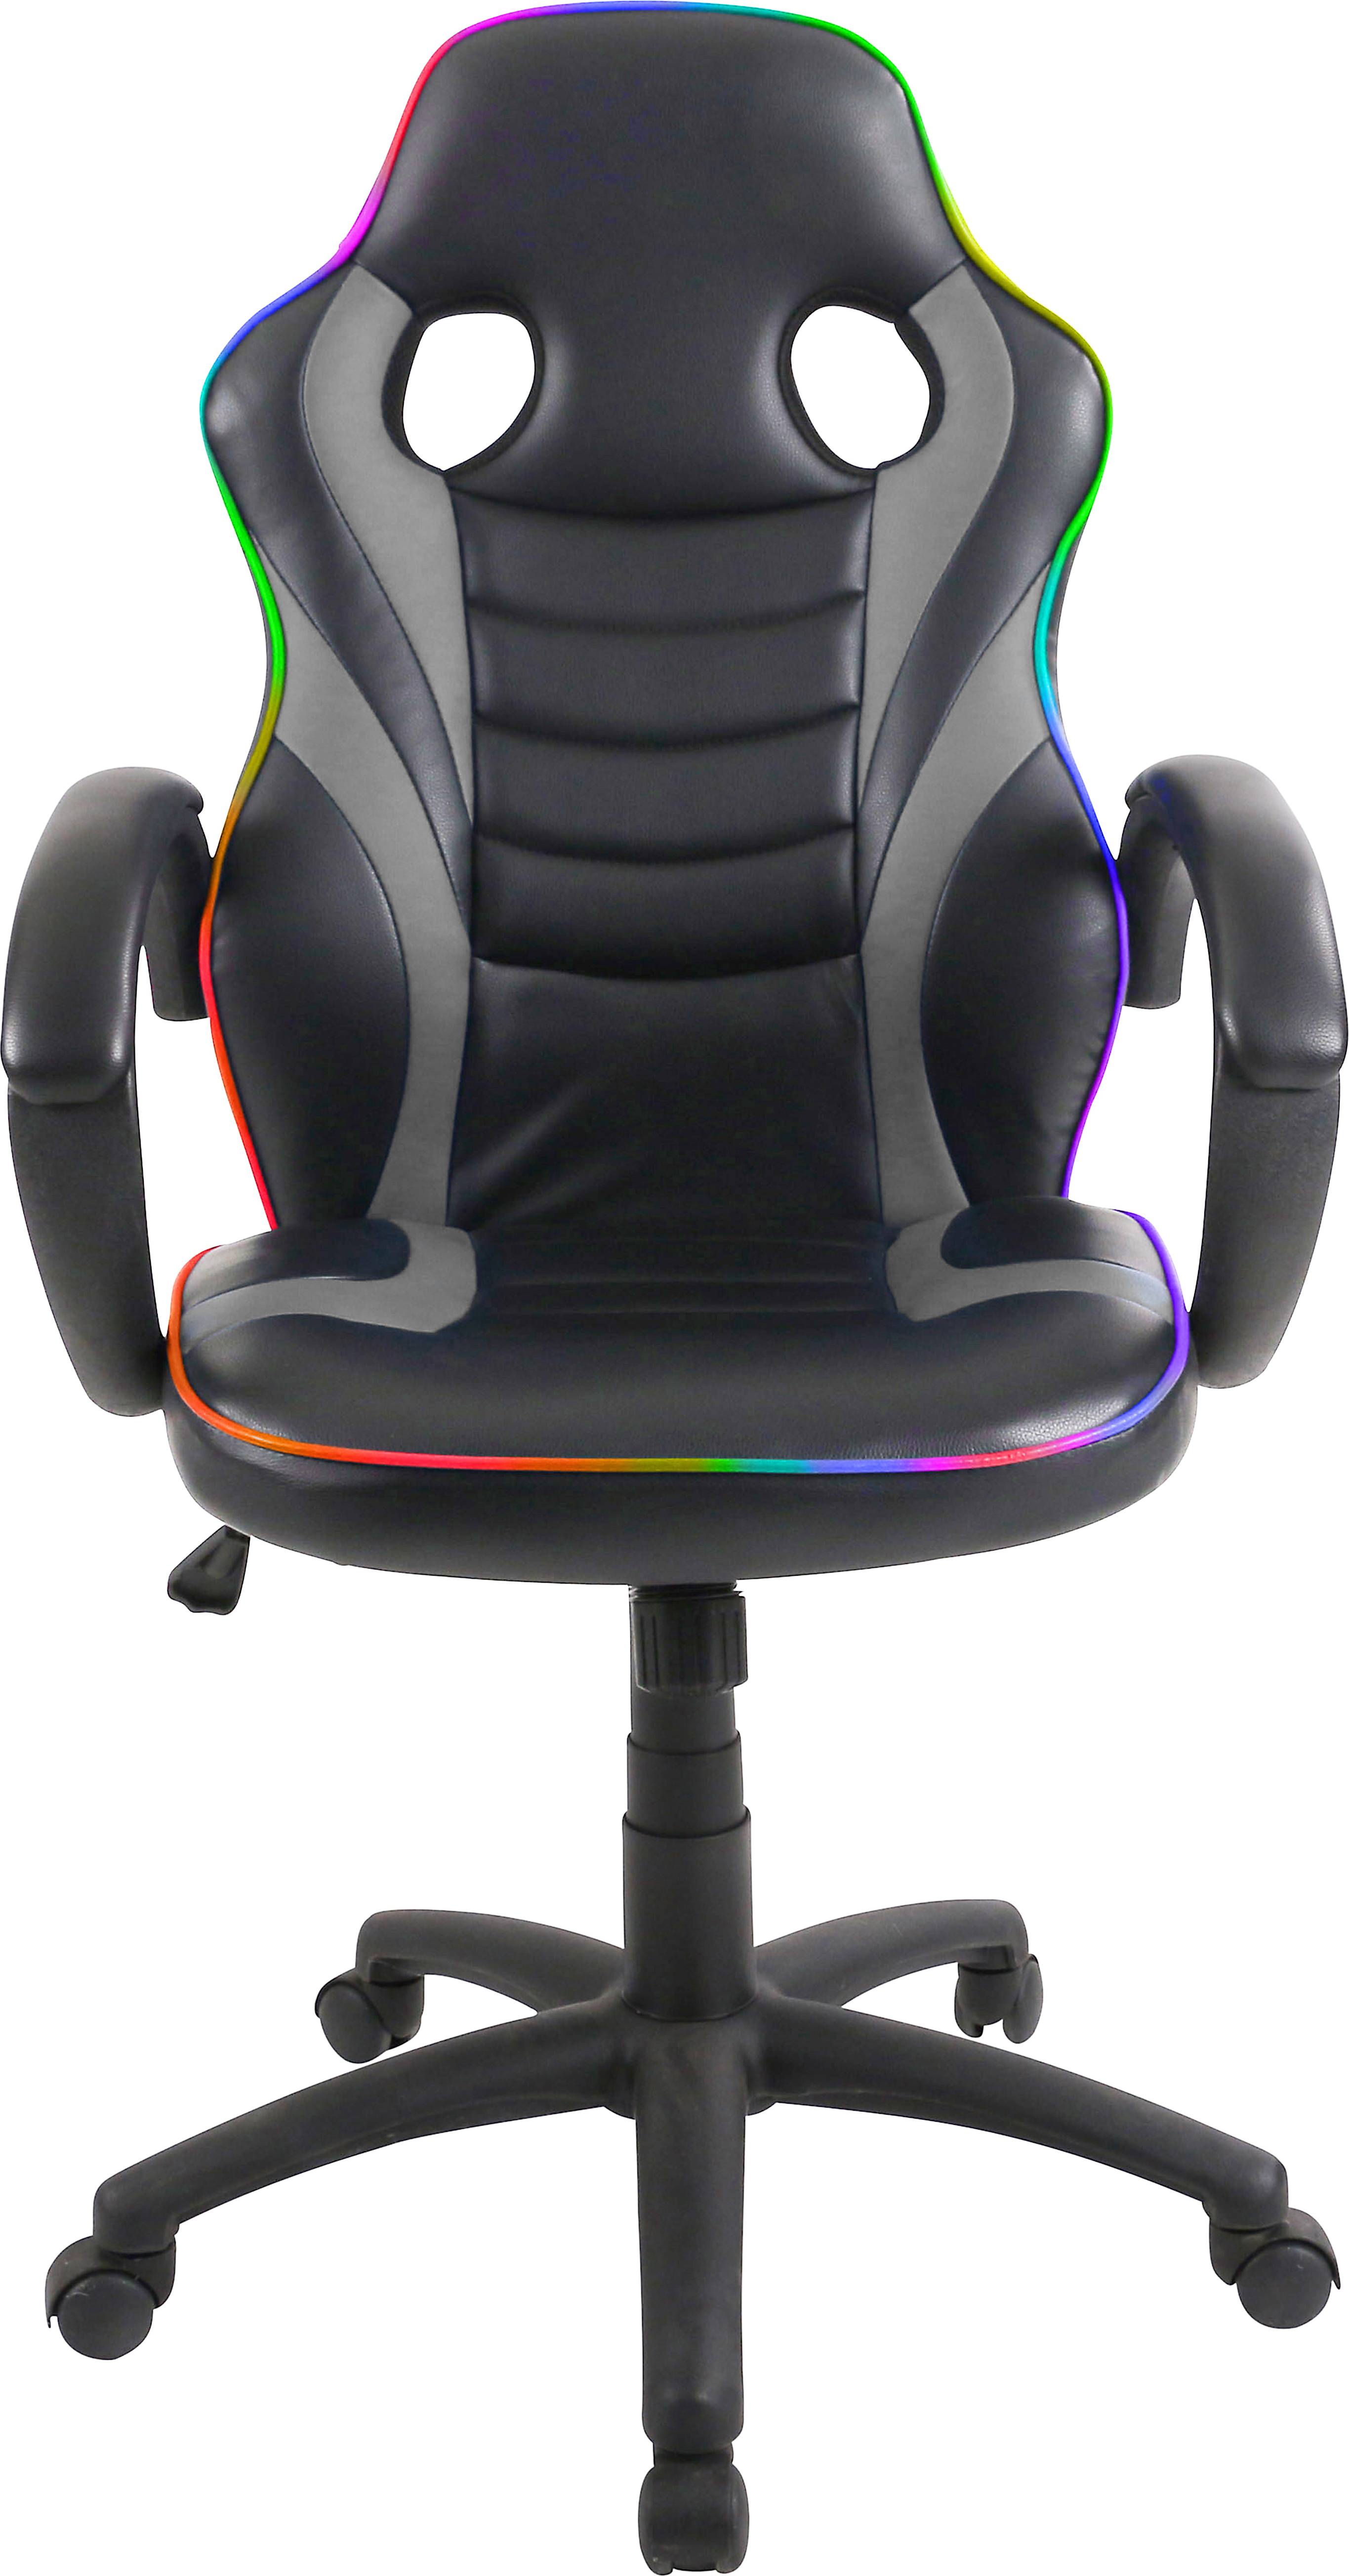  Bild på Exracer Jason LED Gaming Chair - Black/Grey gamingstol